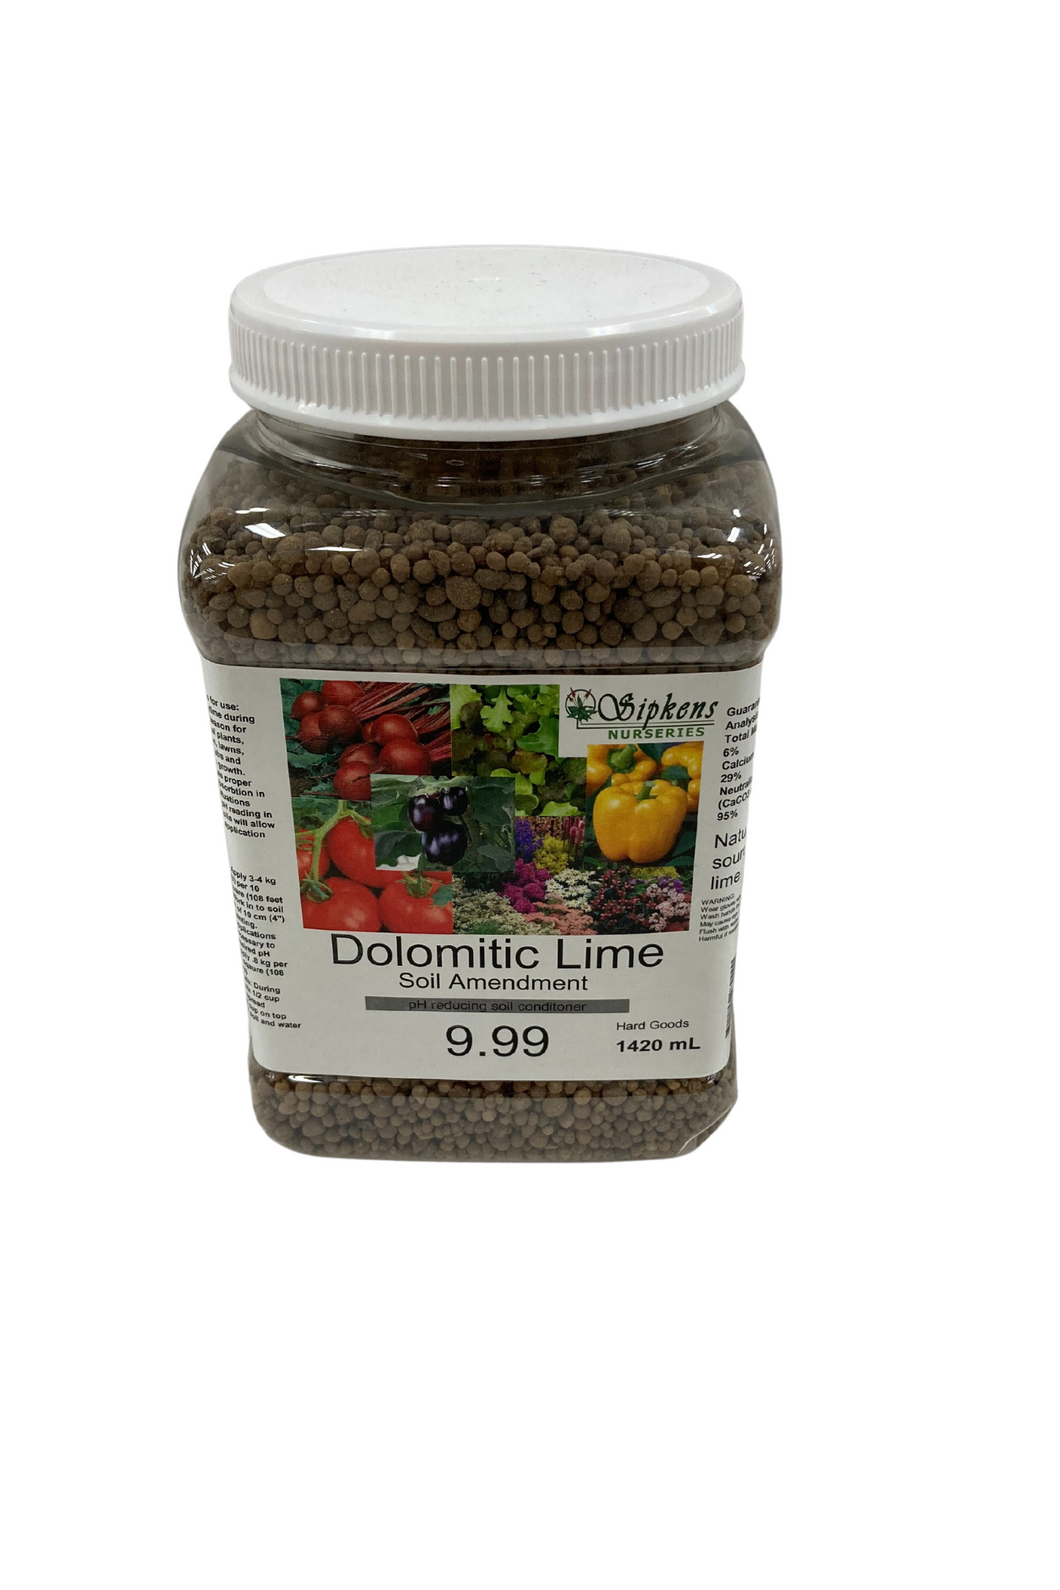 Sipkens Dolomitic Lime